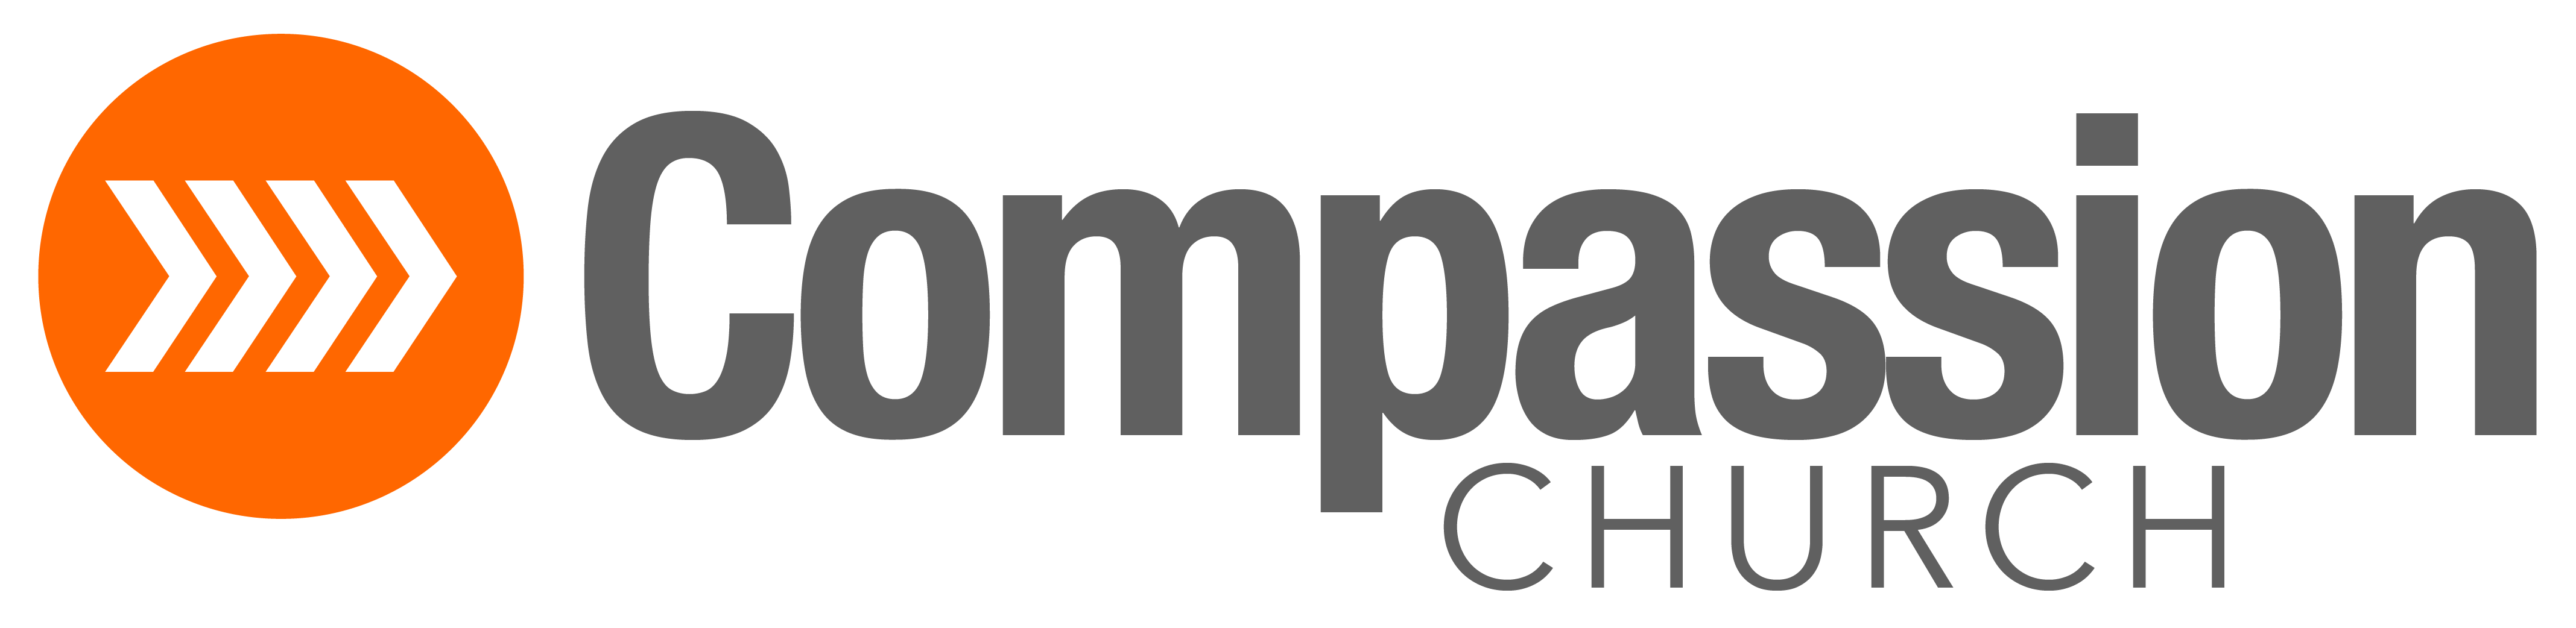 Compassion_Church_Logo